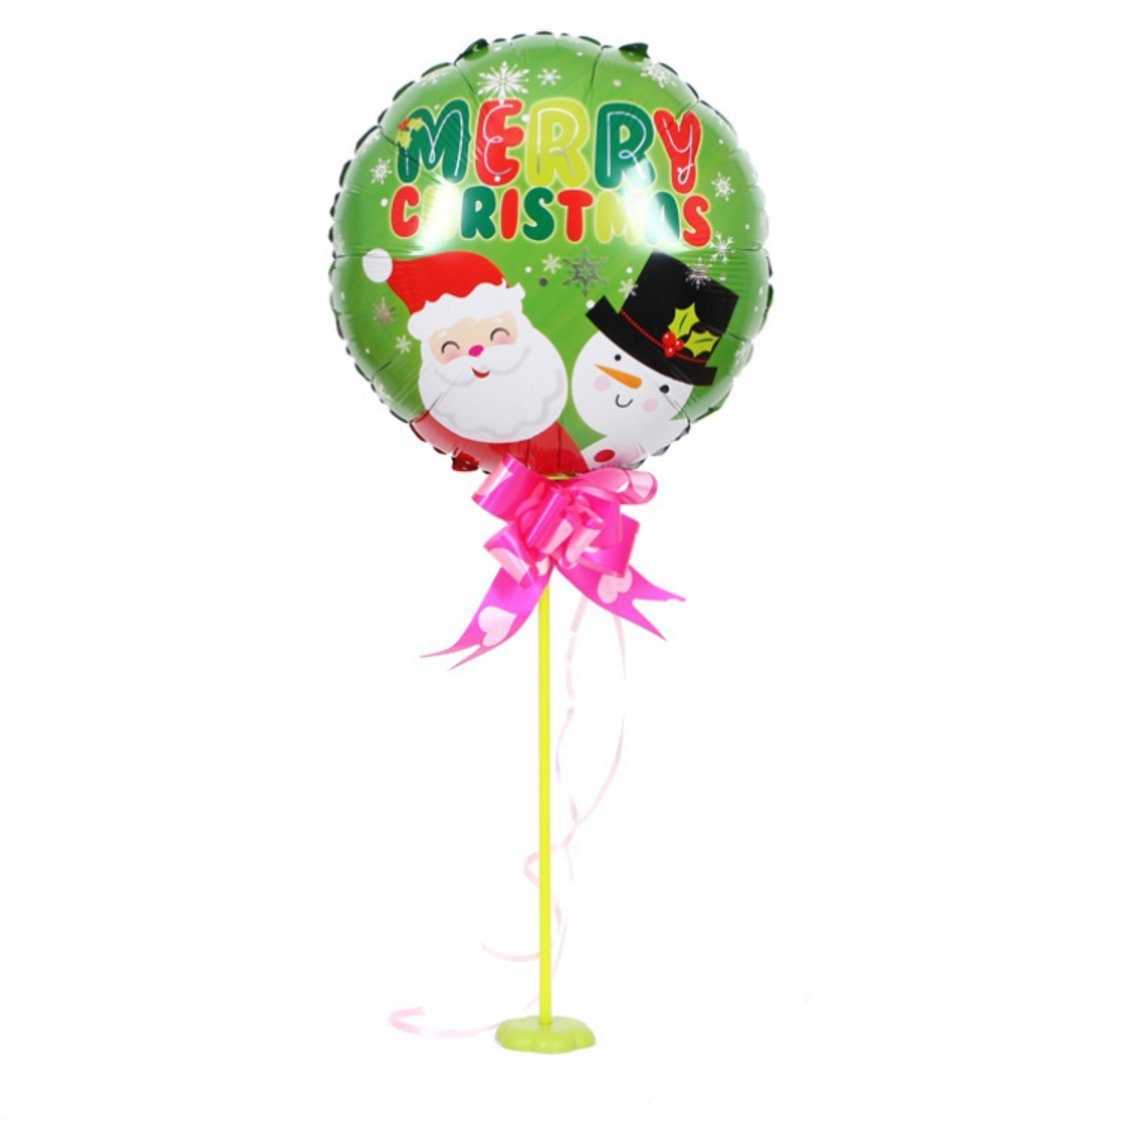 10 Uana Party-Dekorationszubehör Grün Luftballon Weihnachtsfeiertage für